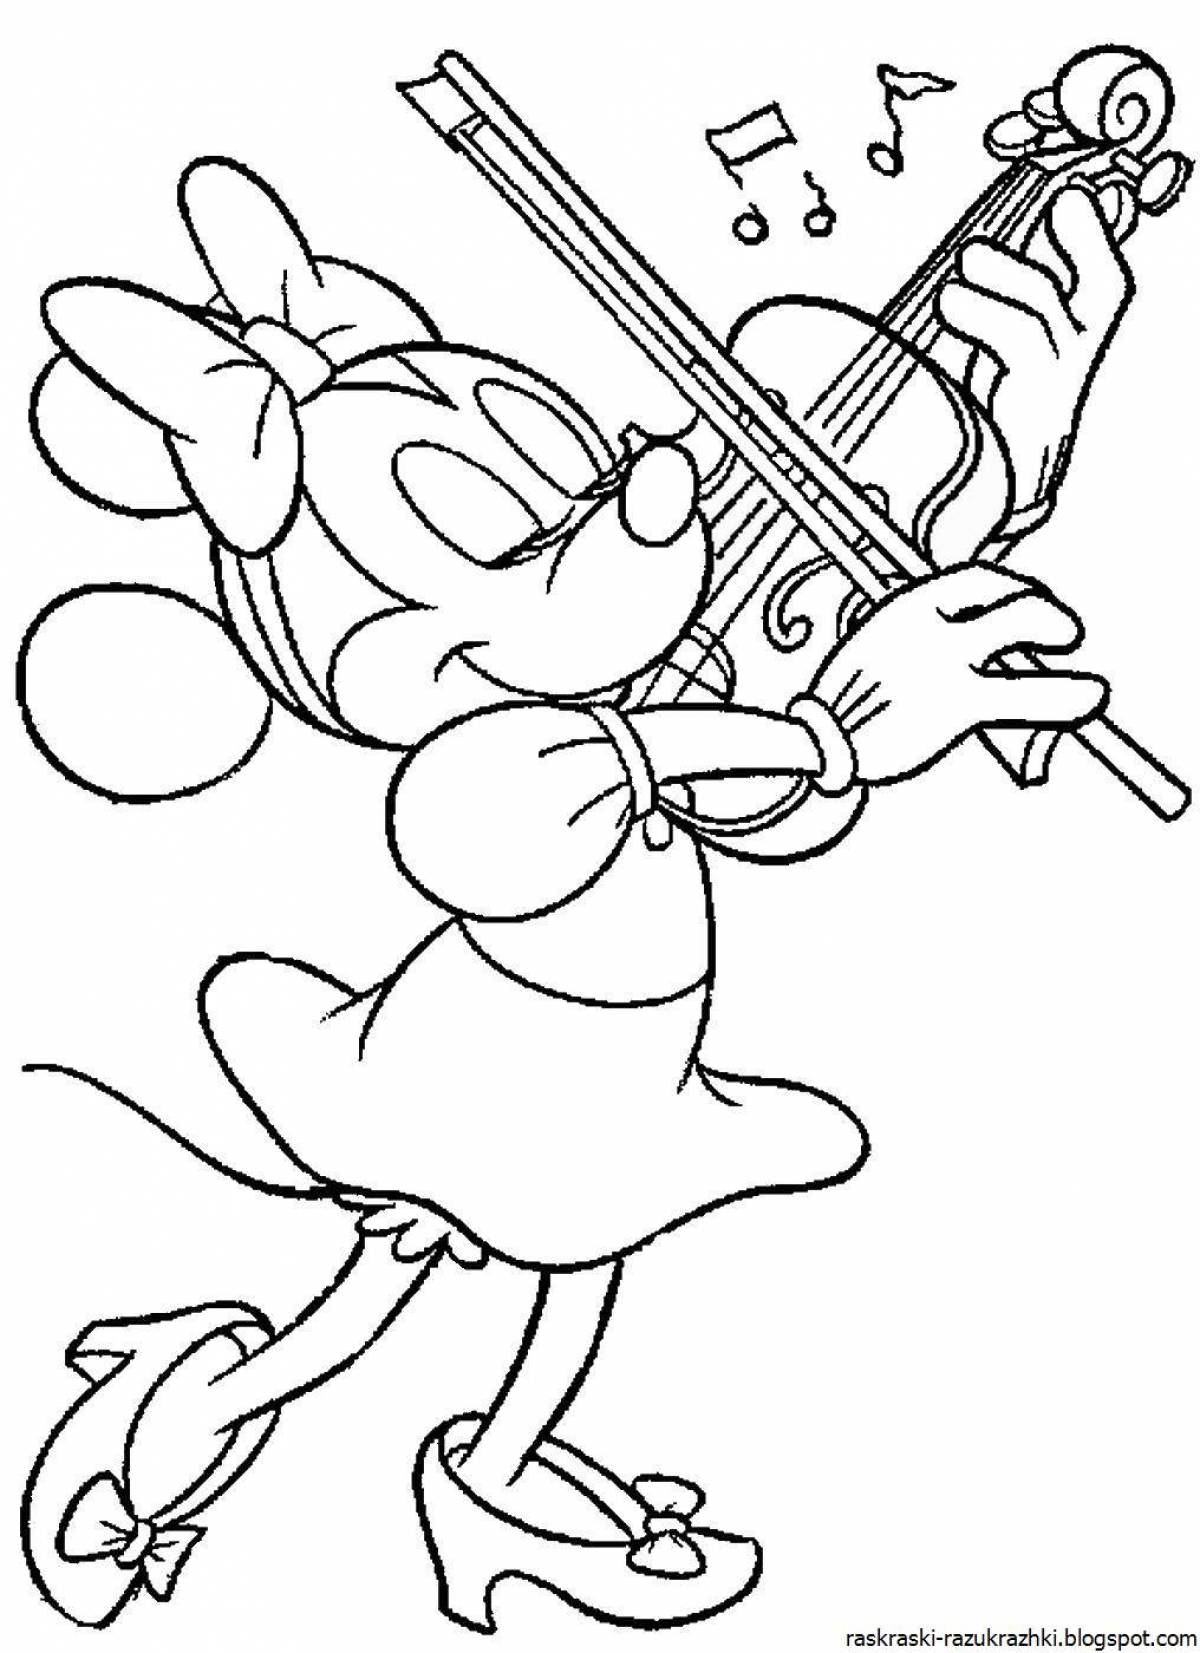 Adorable violin coloring page